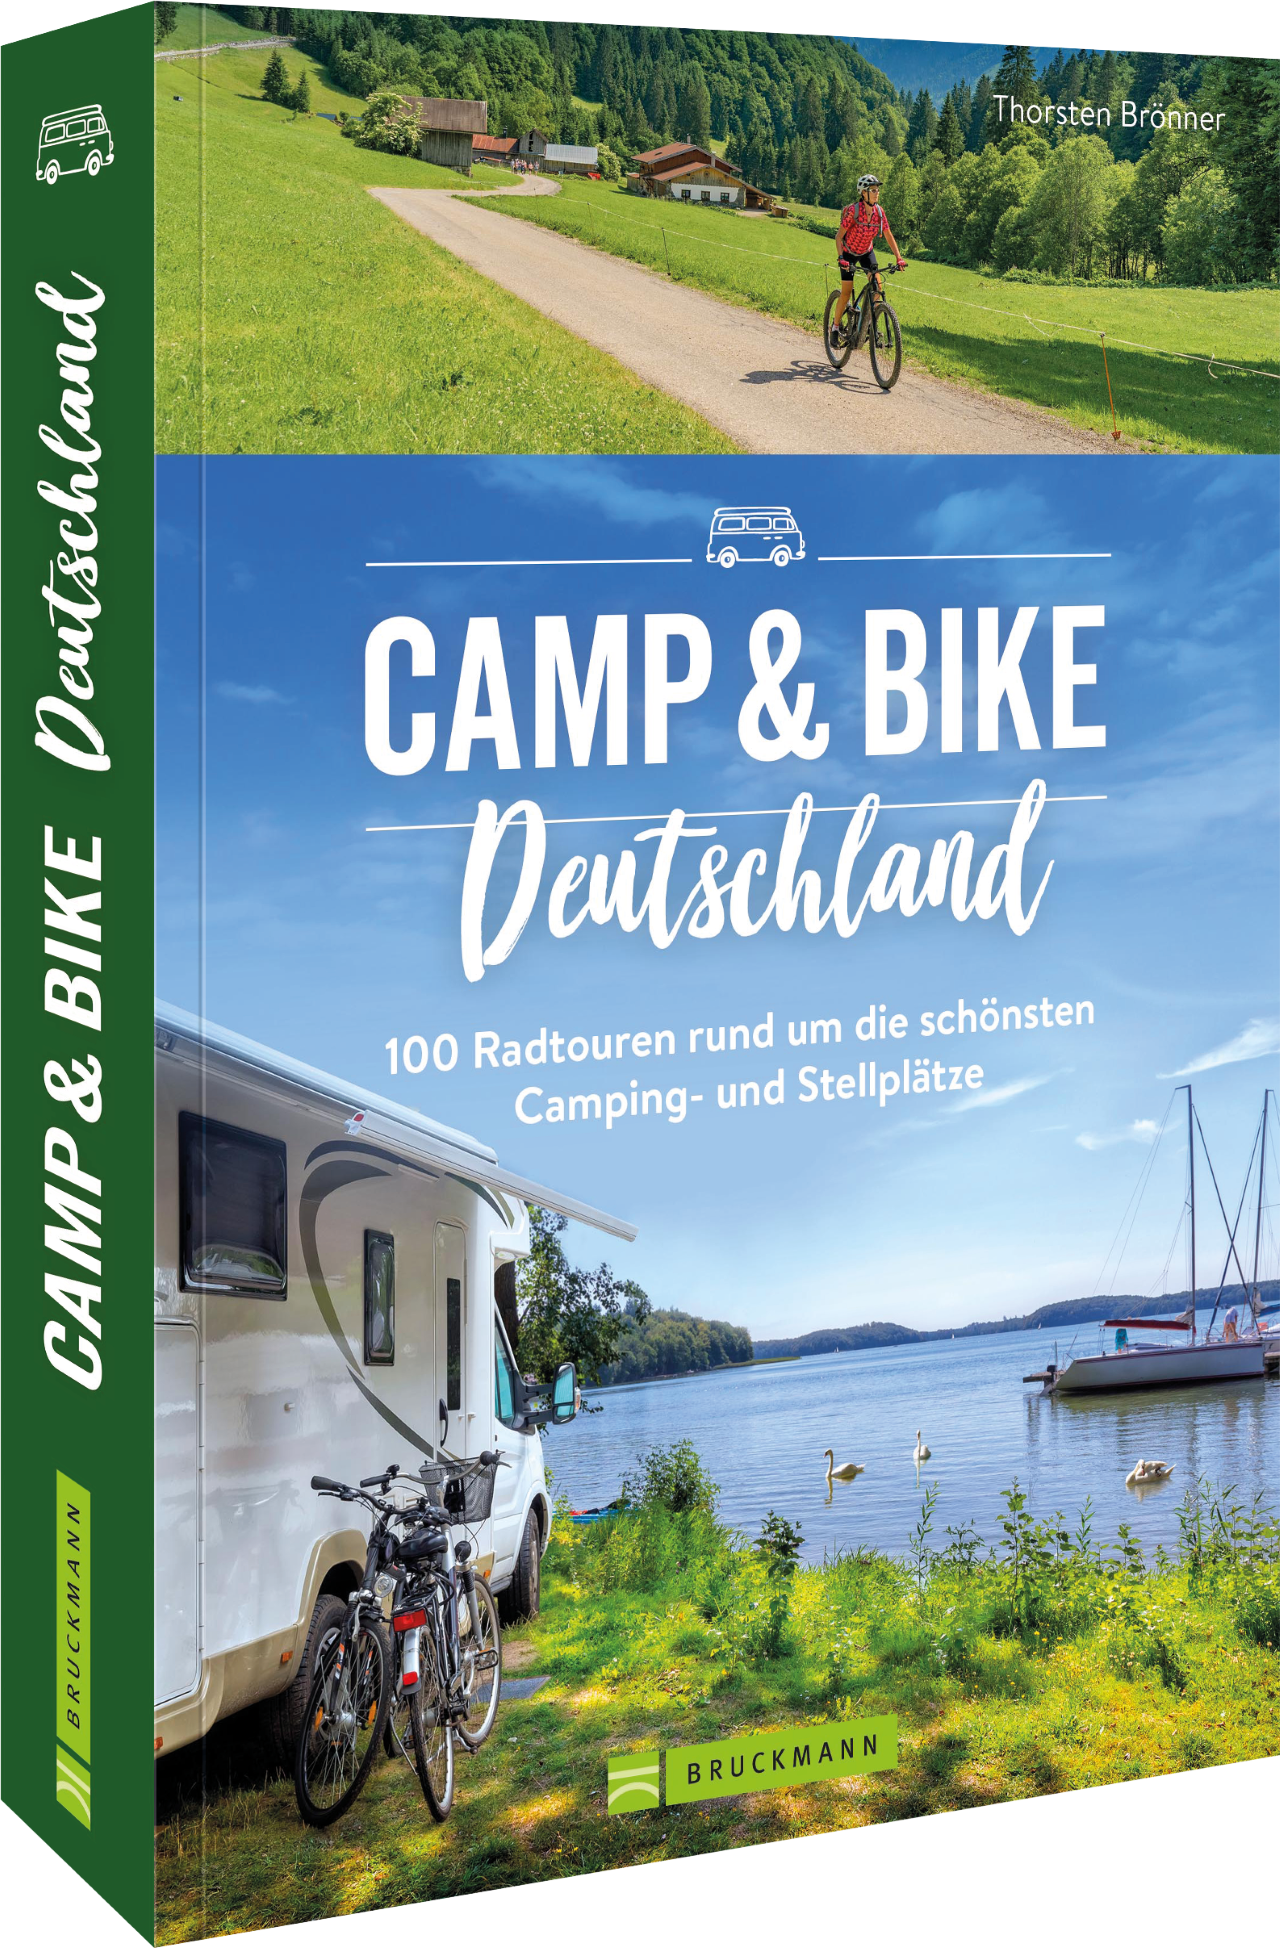 Camp & Bike Deutschland